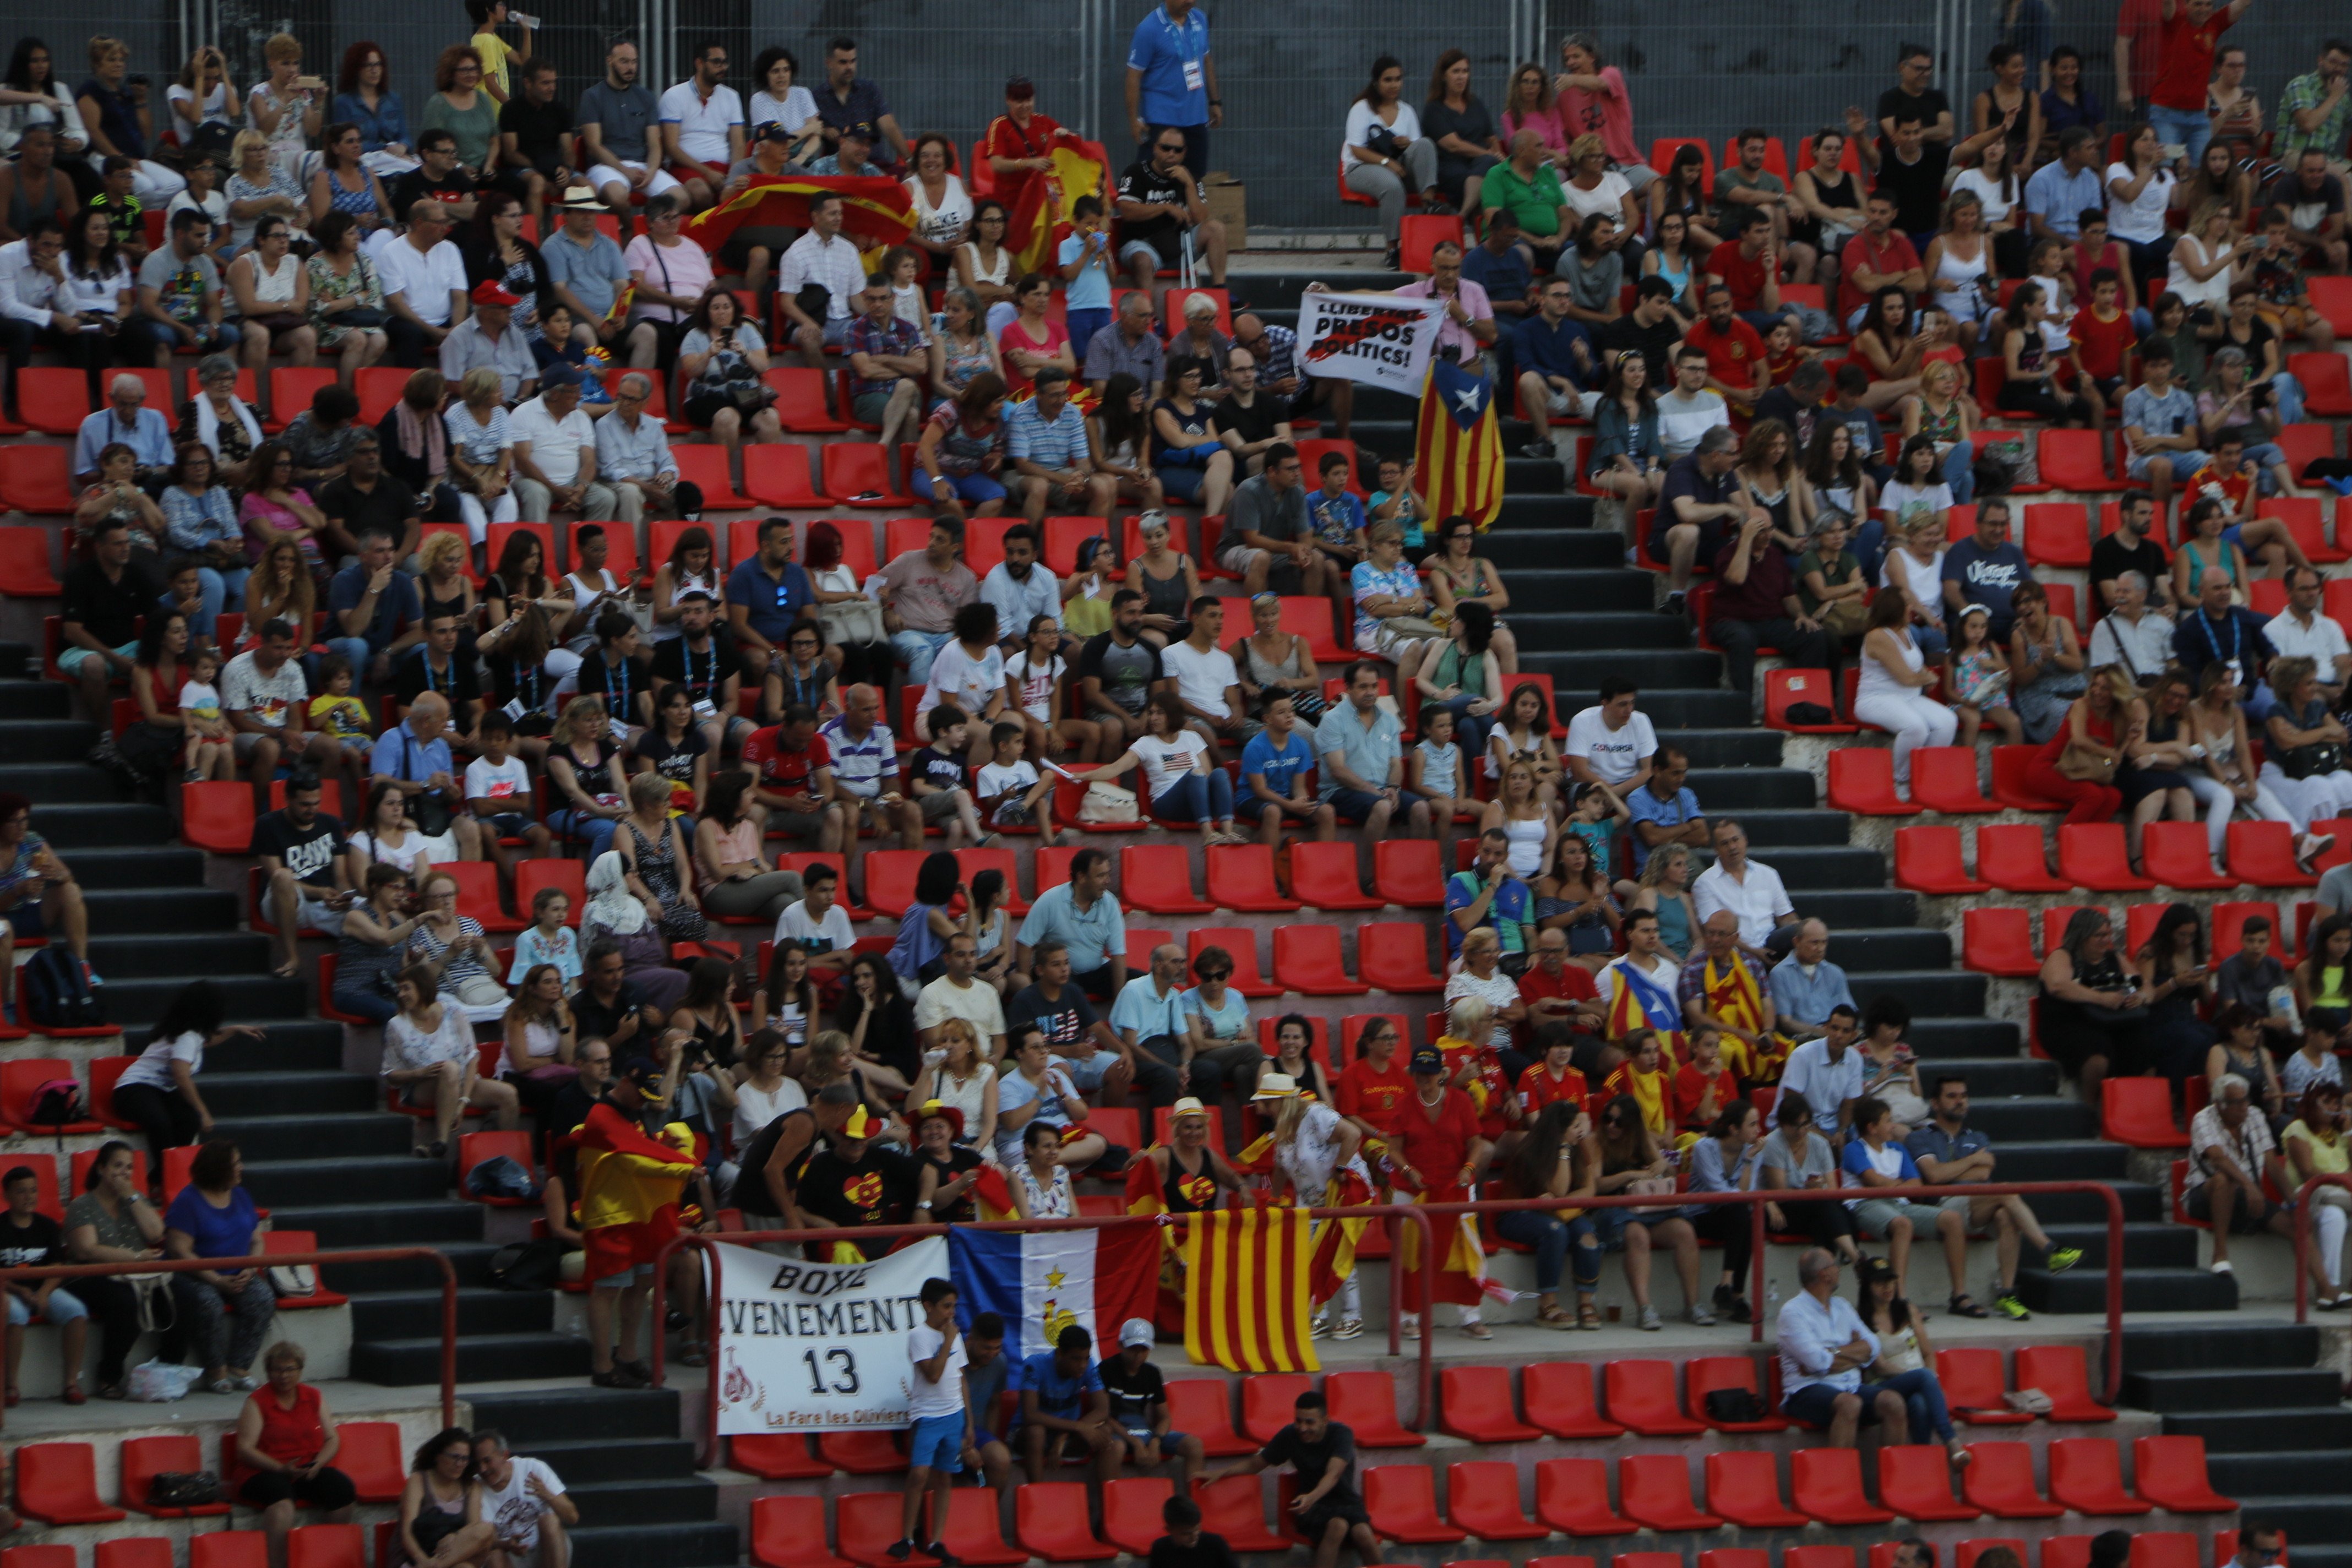 Los Juegos de Tarragona no consiguen llenar ni en la clausura